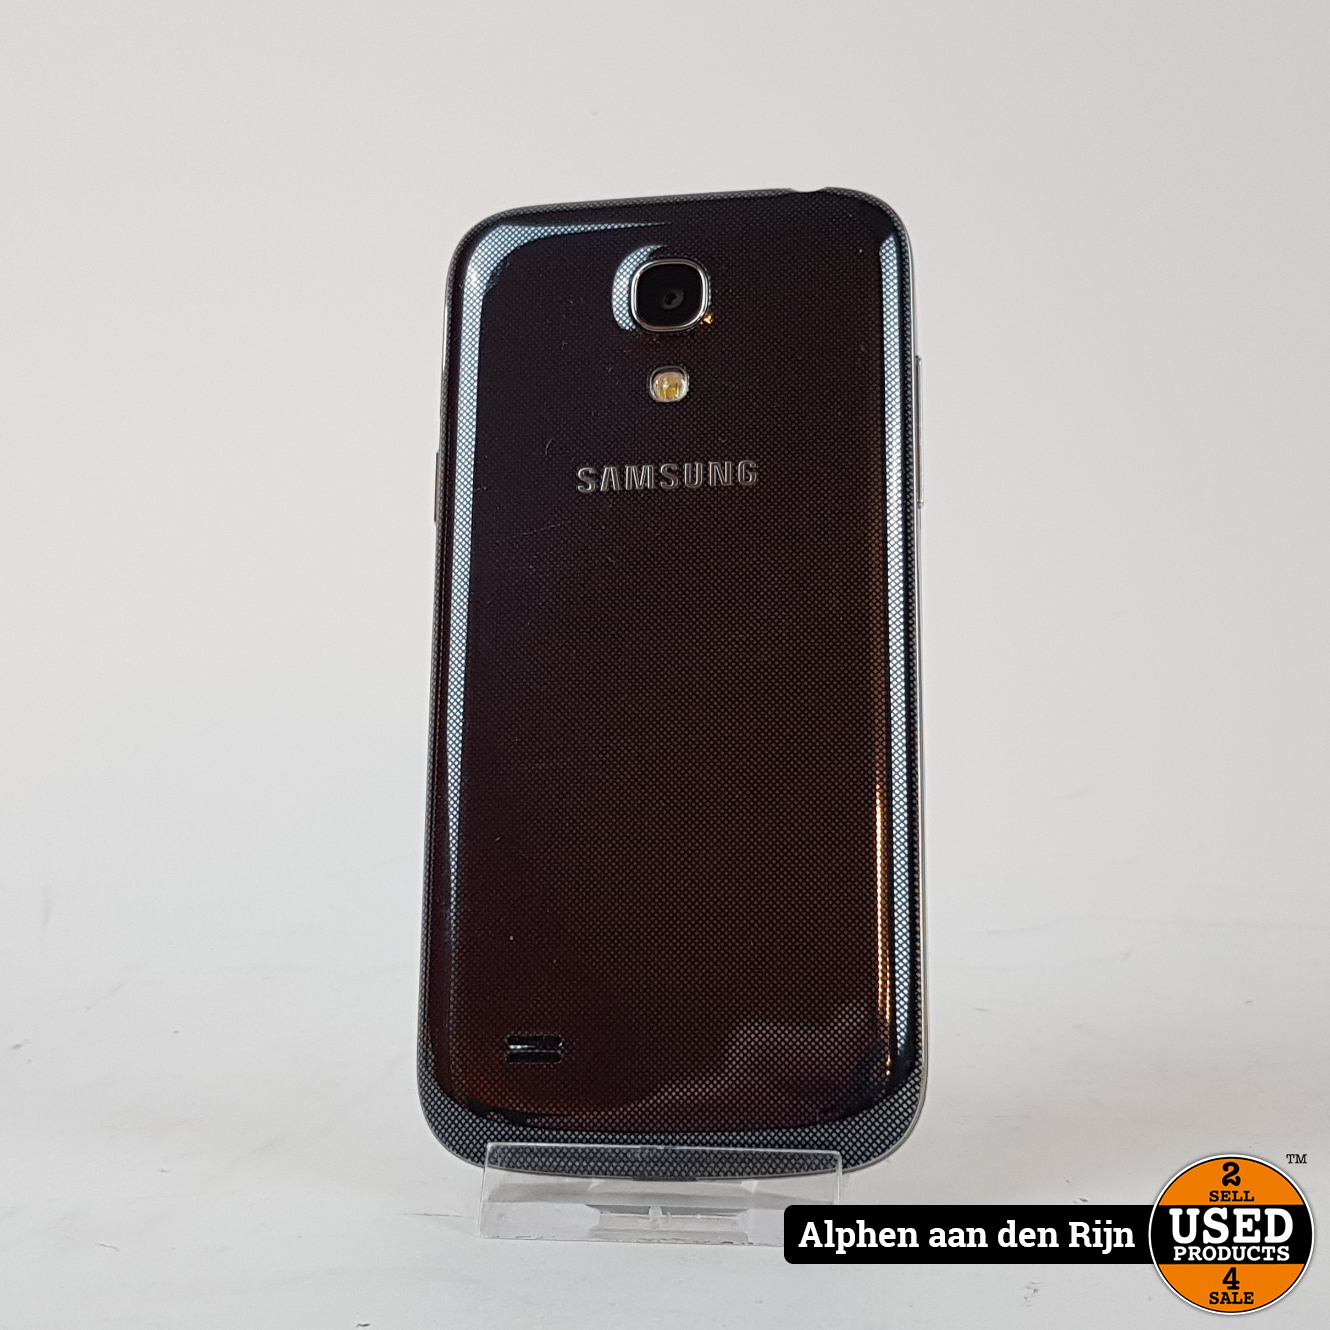 Voorrecht Kapper snor Samsung Galaxy S4 mini 8gb || Android 4.4 - Used Products Alphen aan den  Rijn